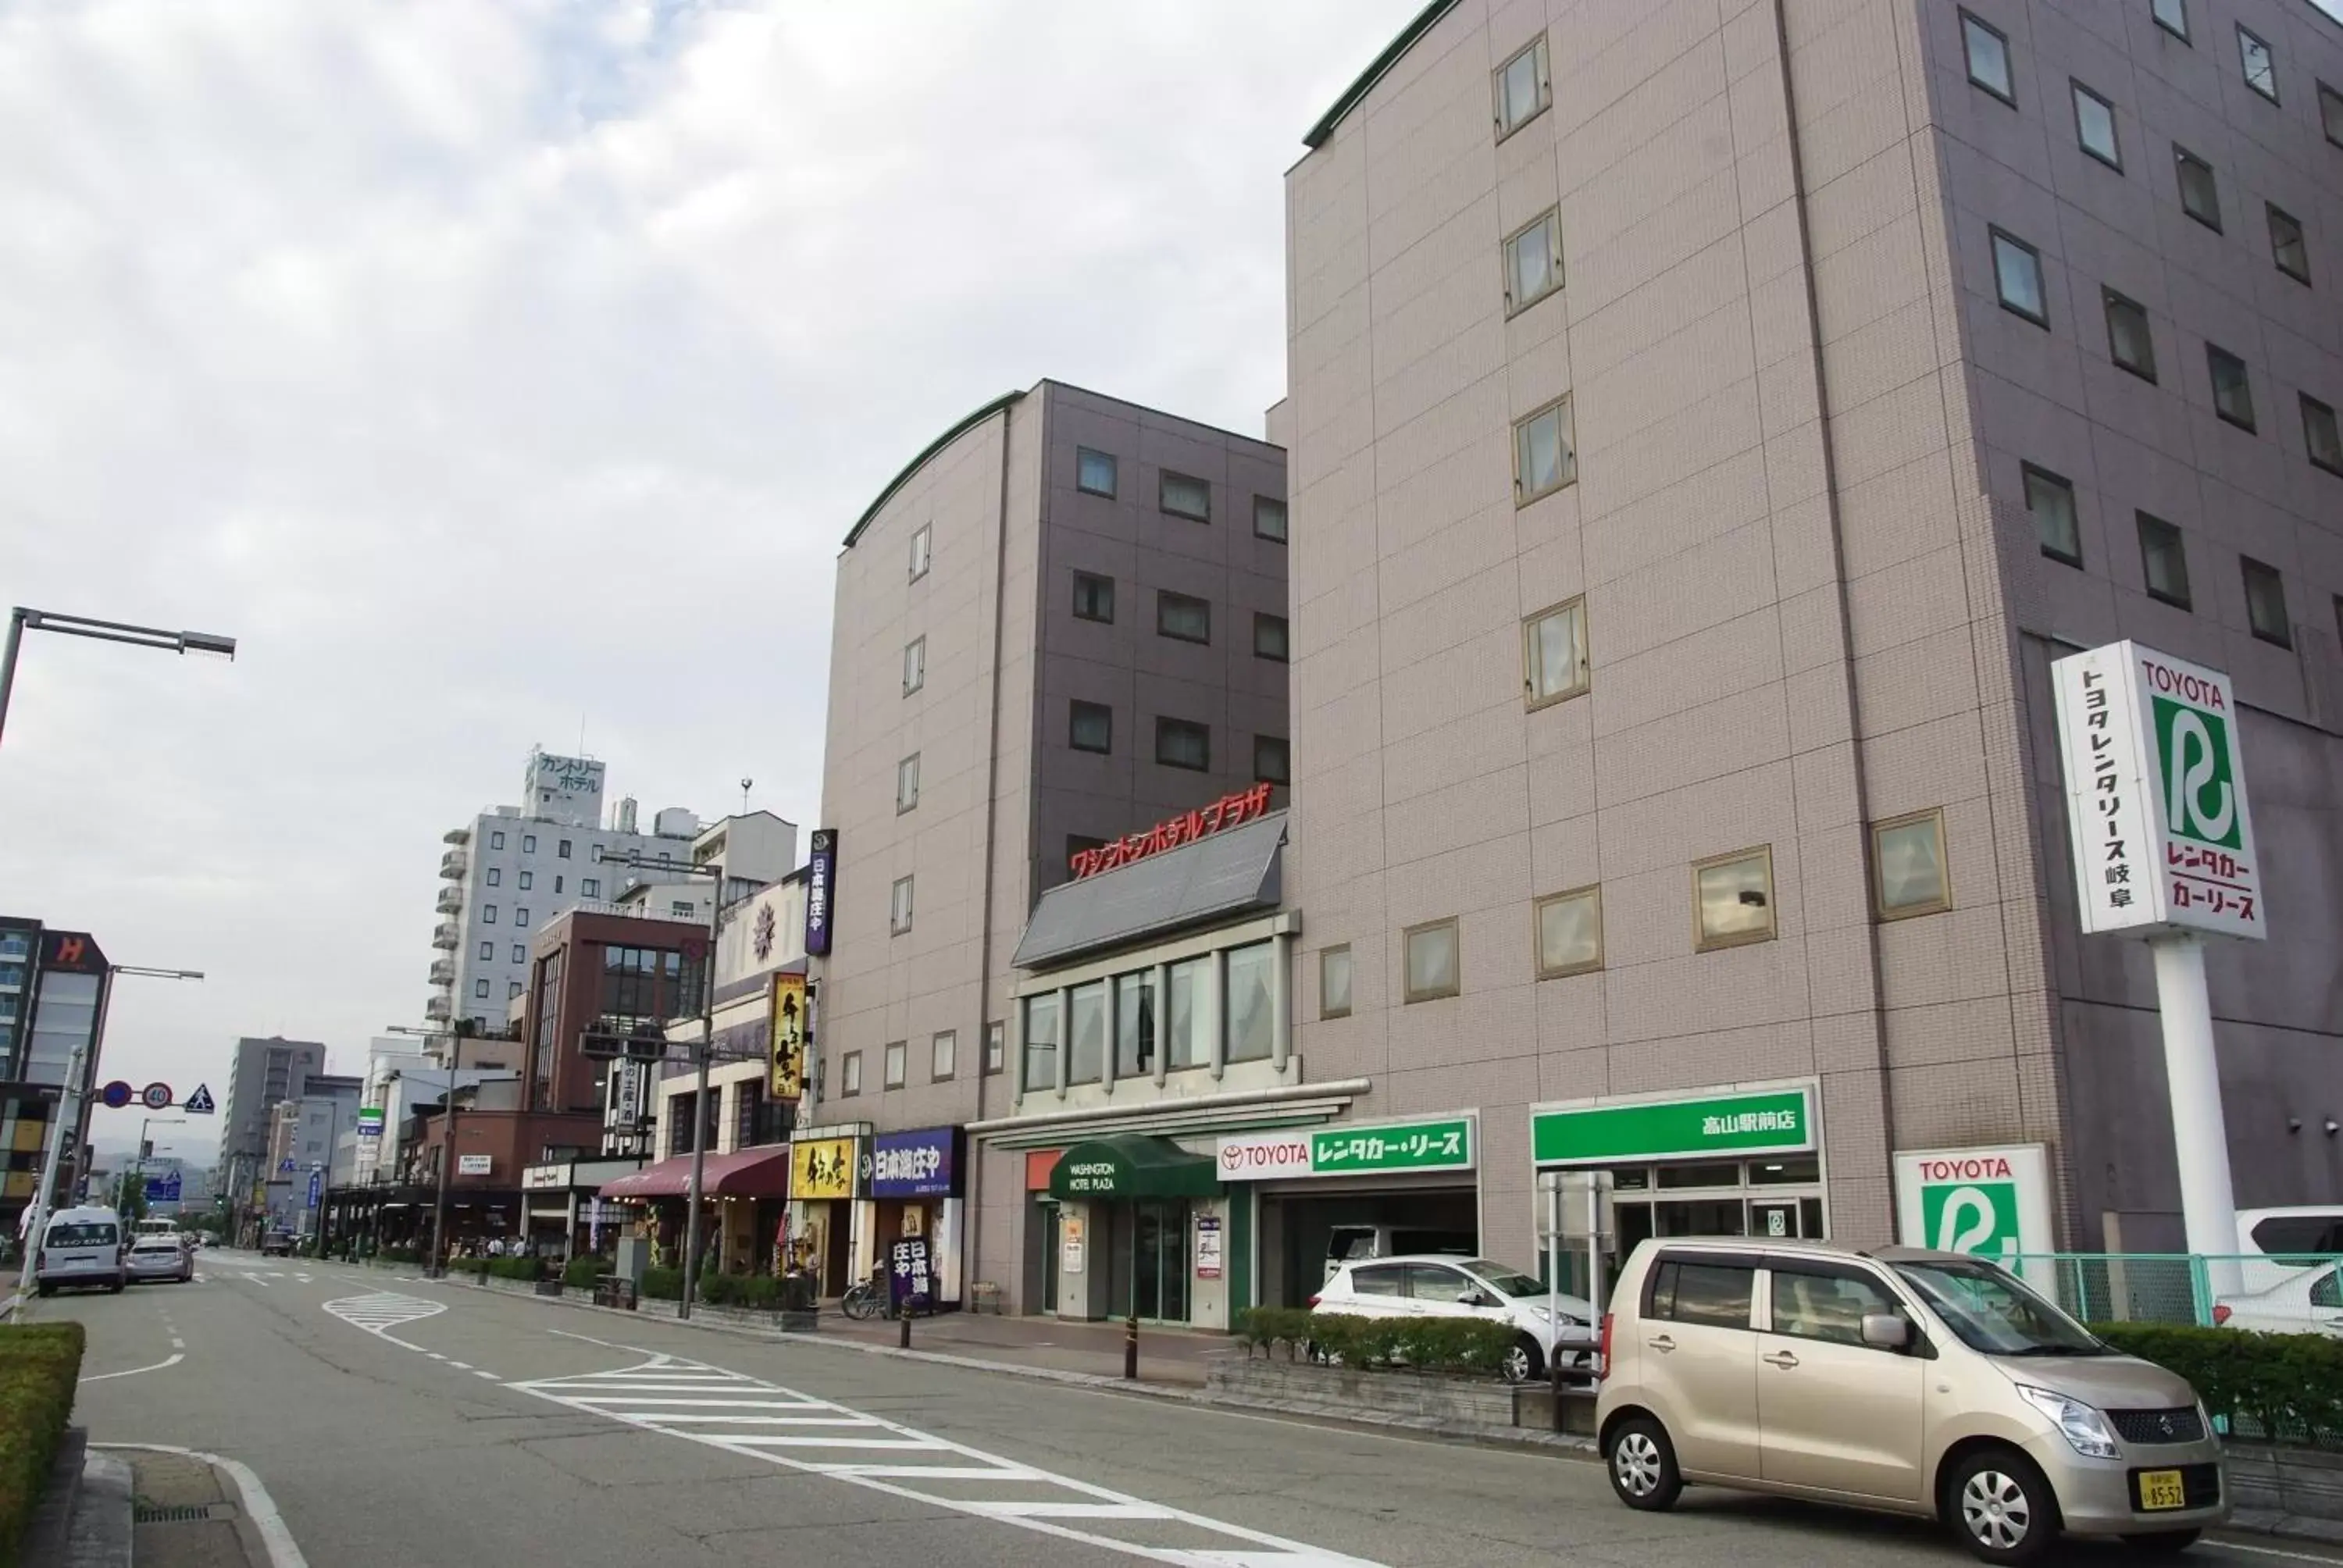 Facade/entrance in Hida Takayama Washington Hotel Plaza